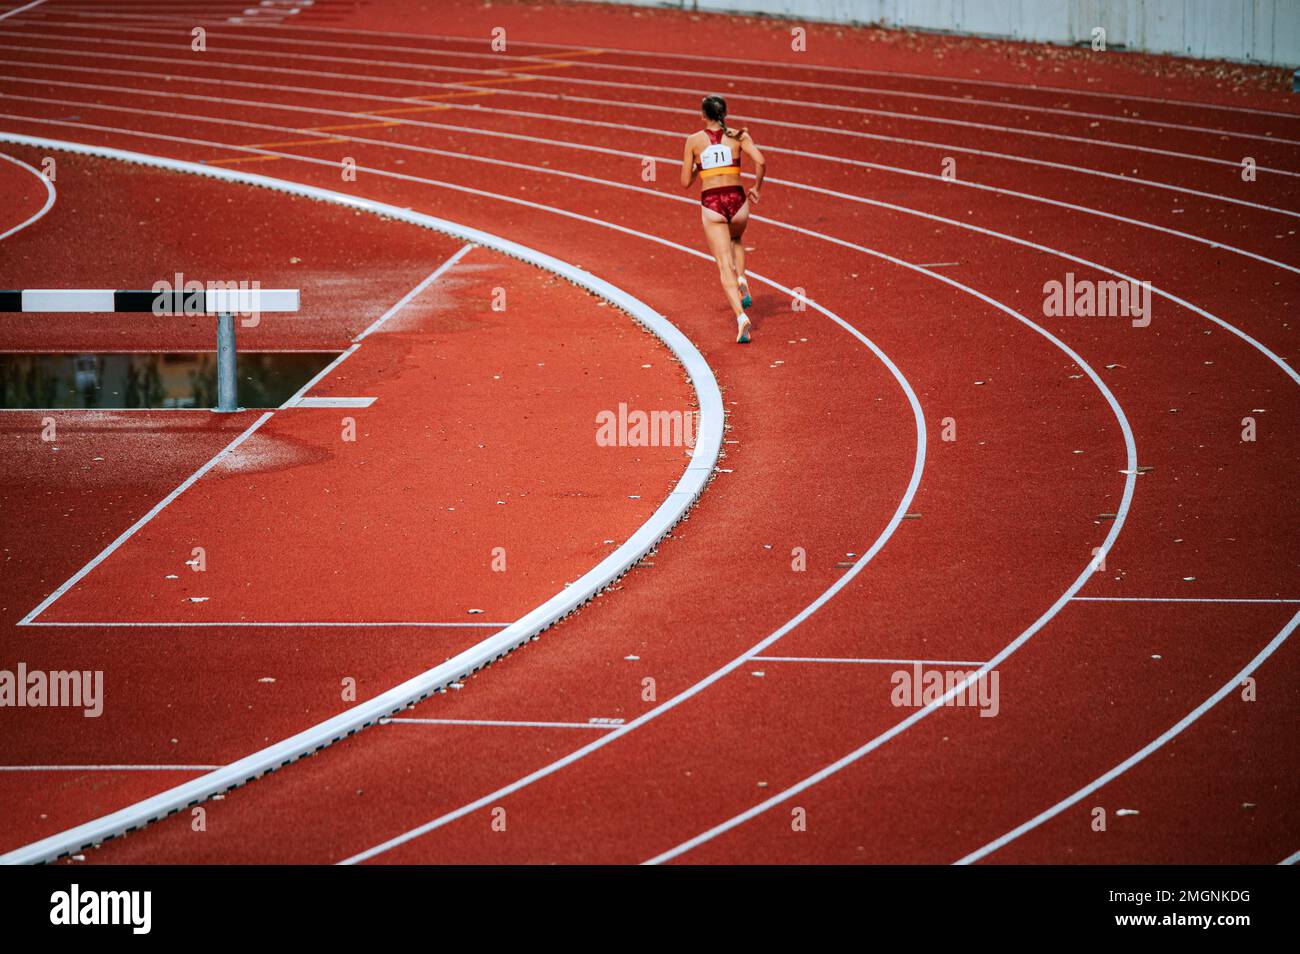 Atleta femenina enfocada empujando sus límites en una carrera de distancia en la pista. Adecuado para campañas deportivas y fitness, destacando determinación y perseverancia Foto de stock